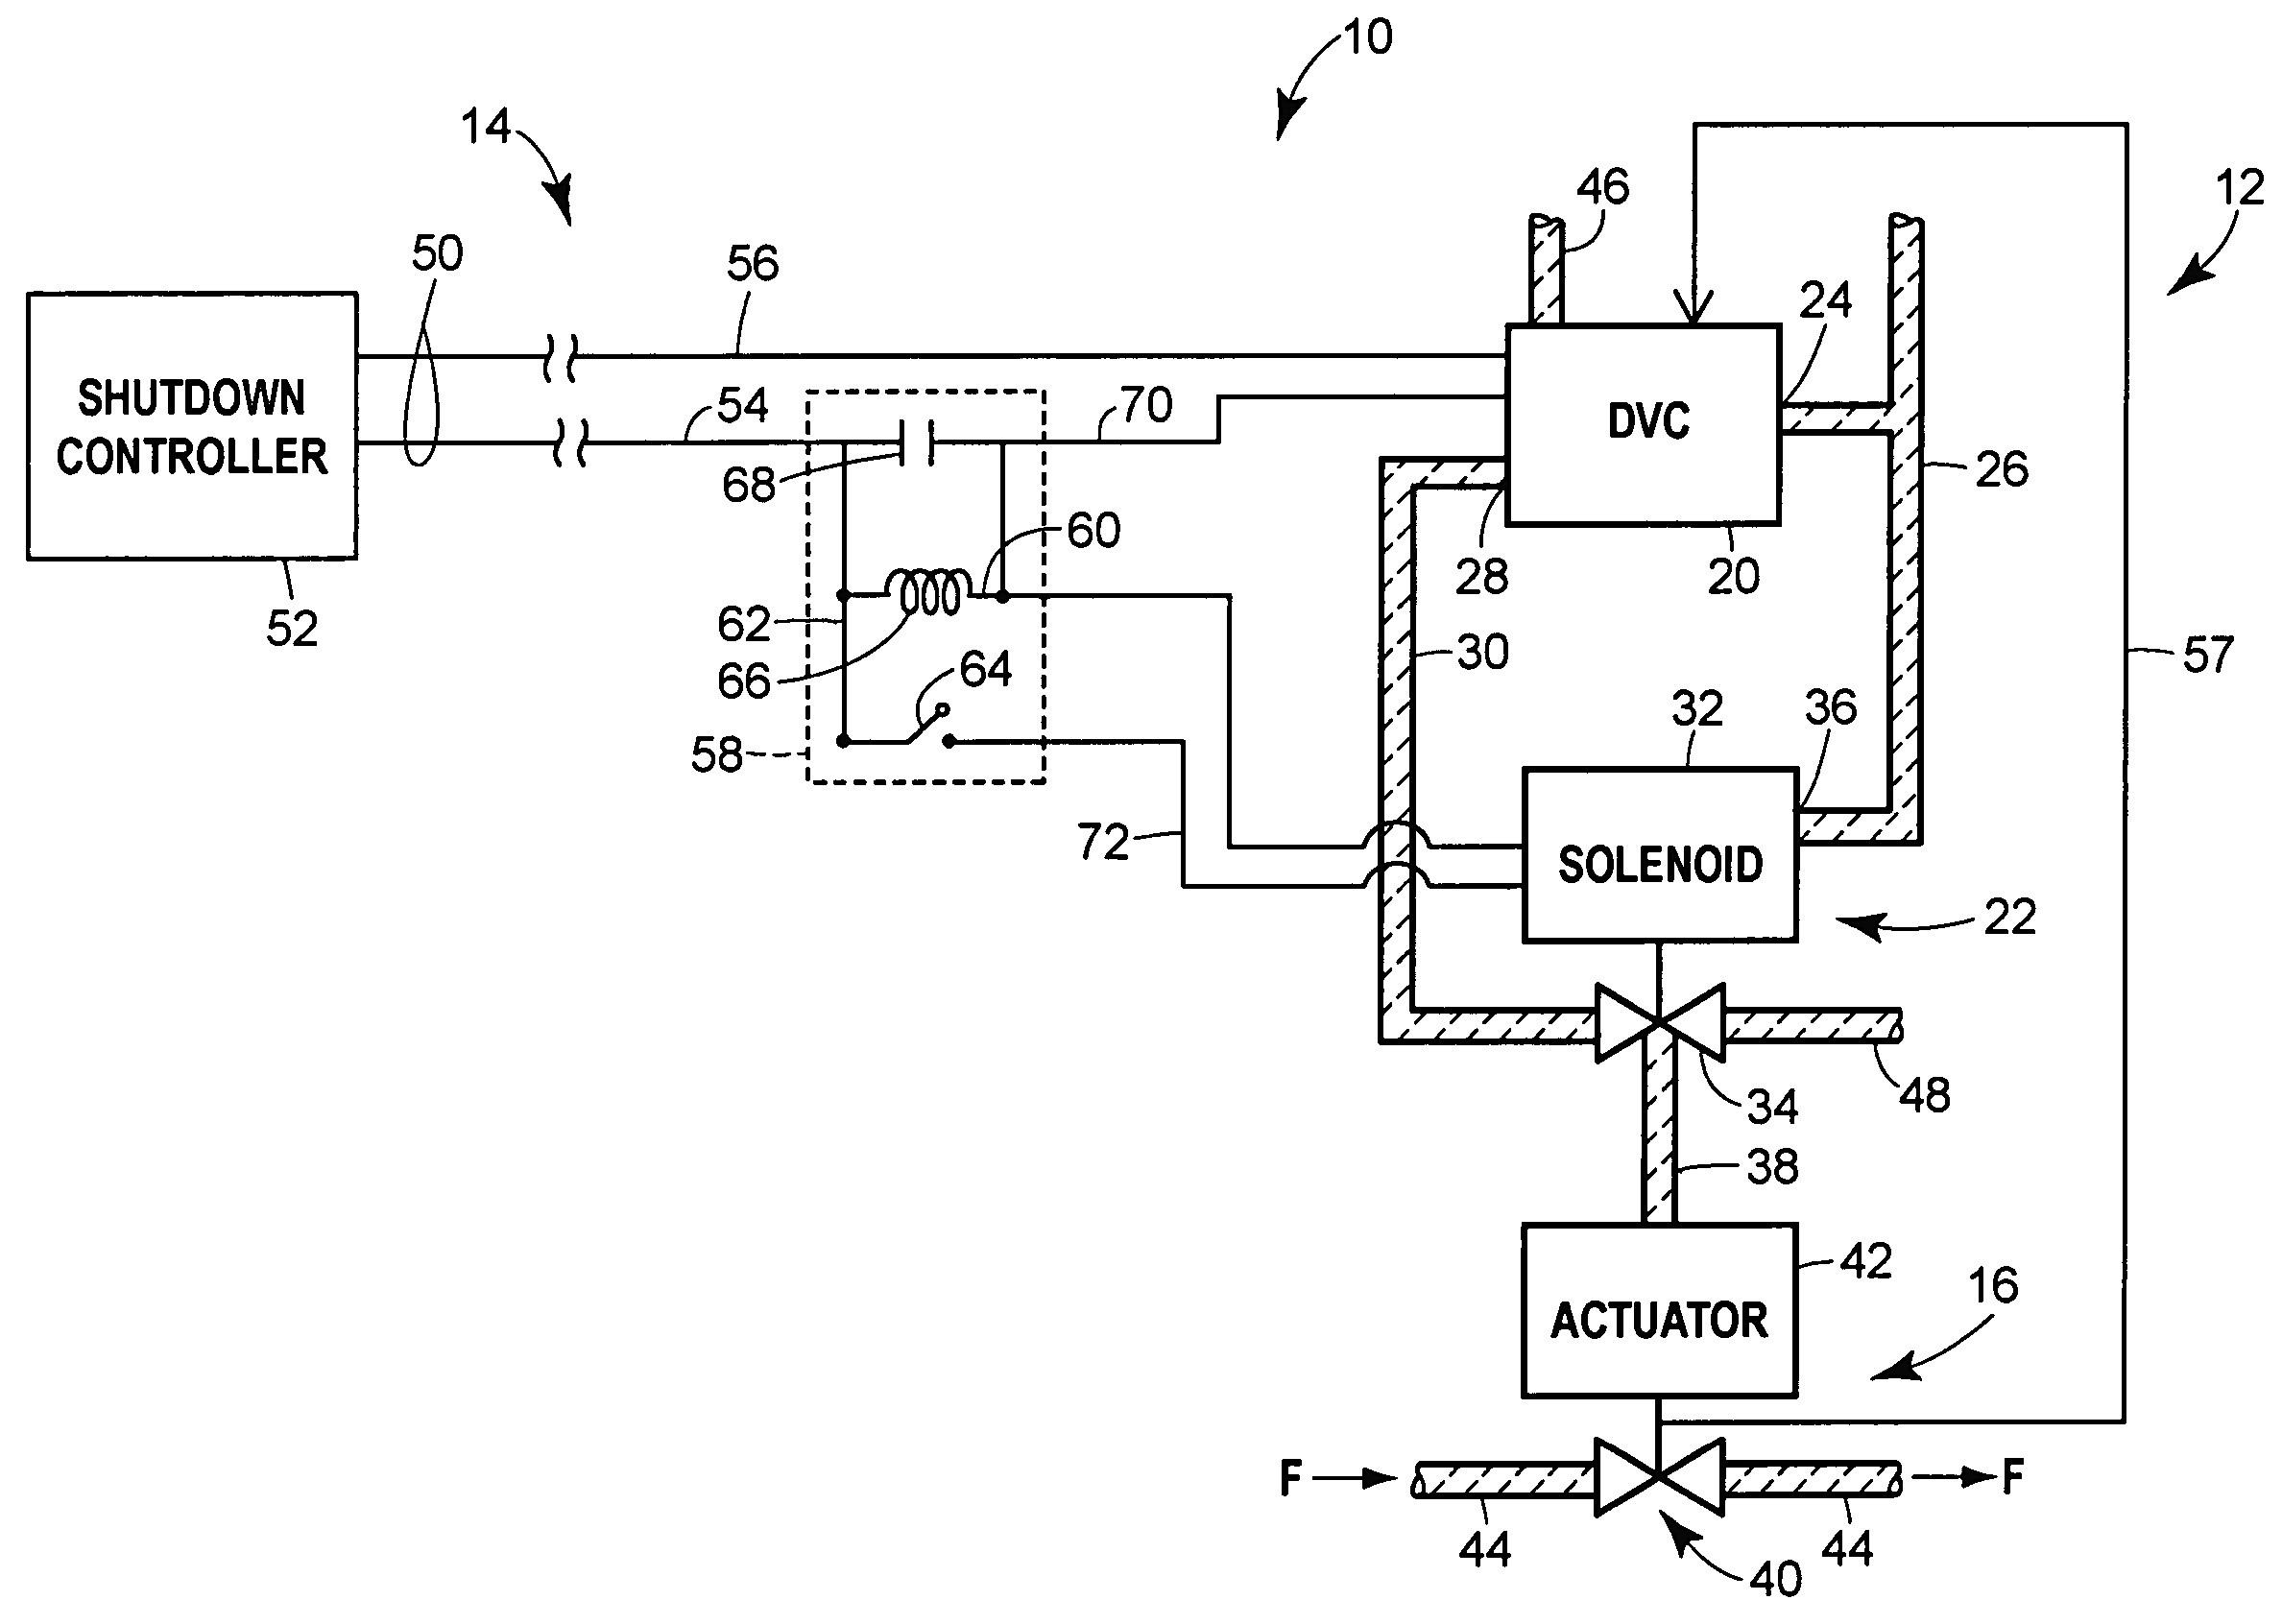 12 volt hydraulic pump wiring diagram unique hydraulic solenoid rh mmanews us